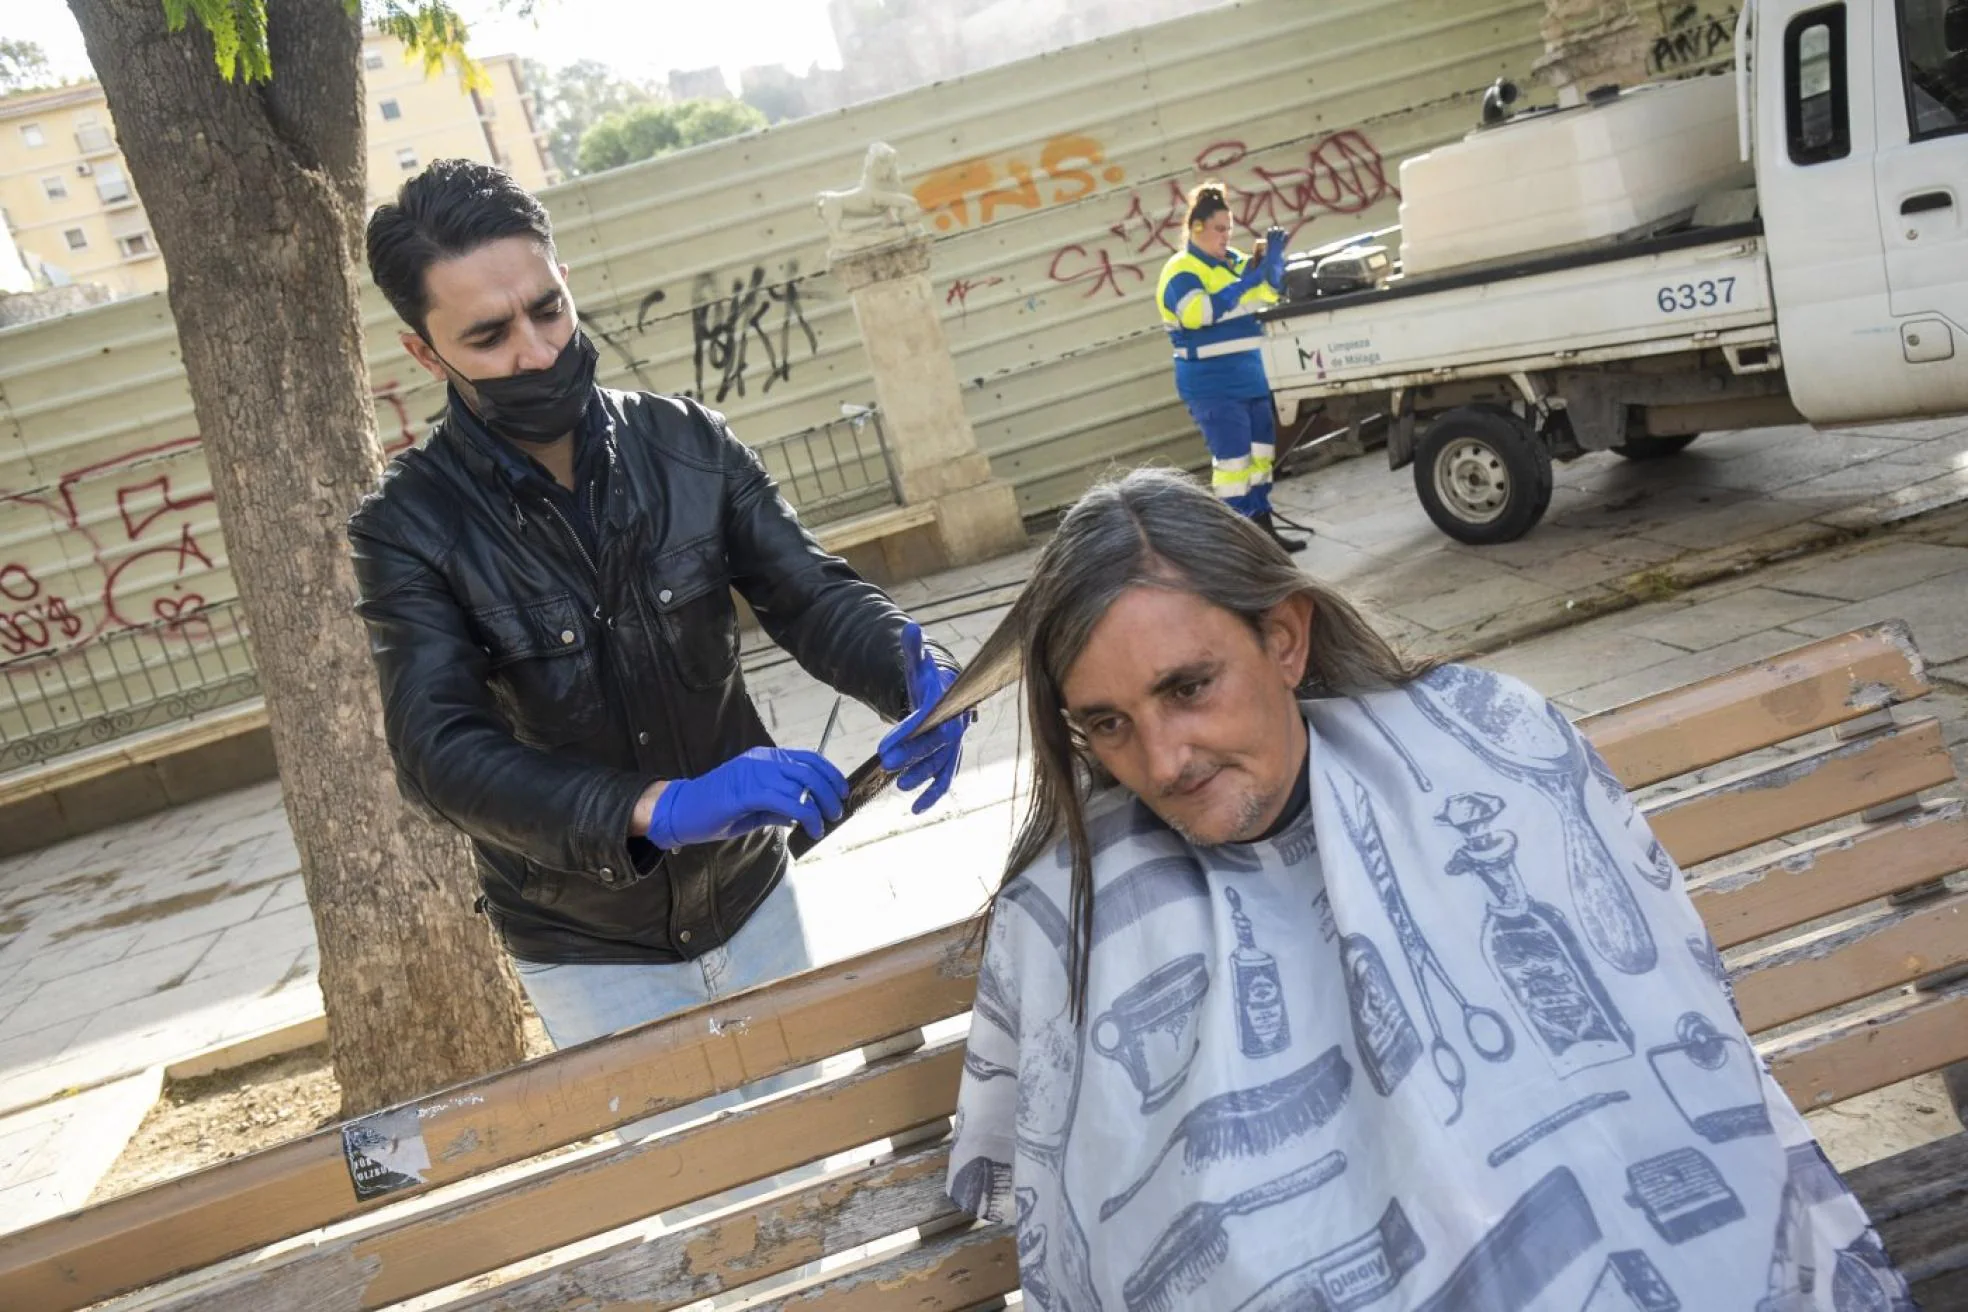 Isaac Bousnane cutting the hair of a homeless man. 